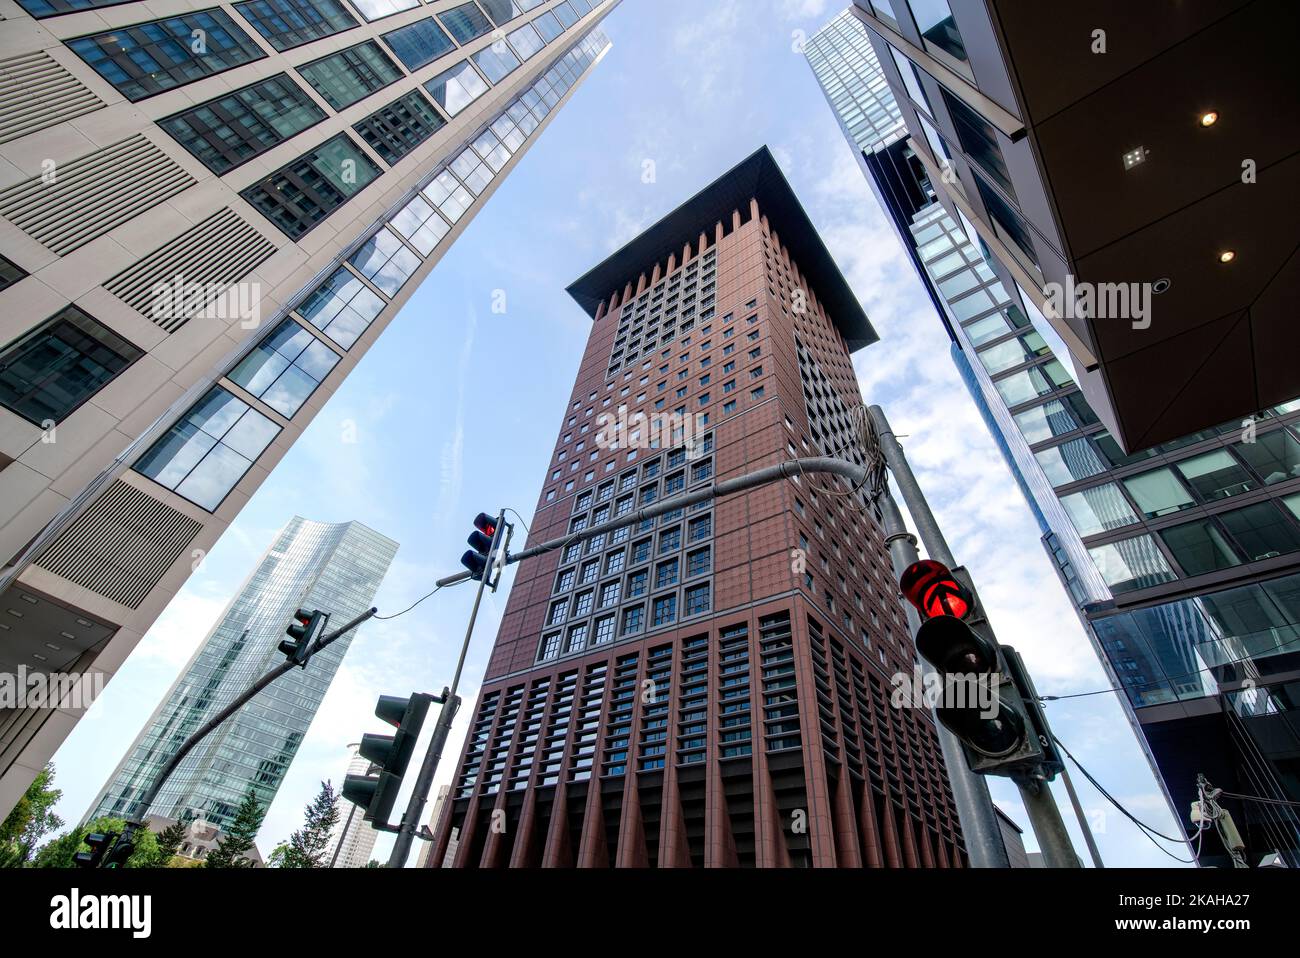 Japan Center e altri grattacieli nel centro di Francoforte sul meno Foto Stock